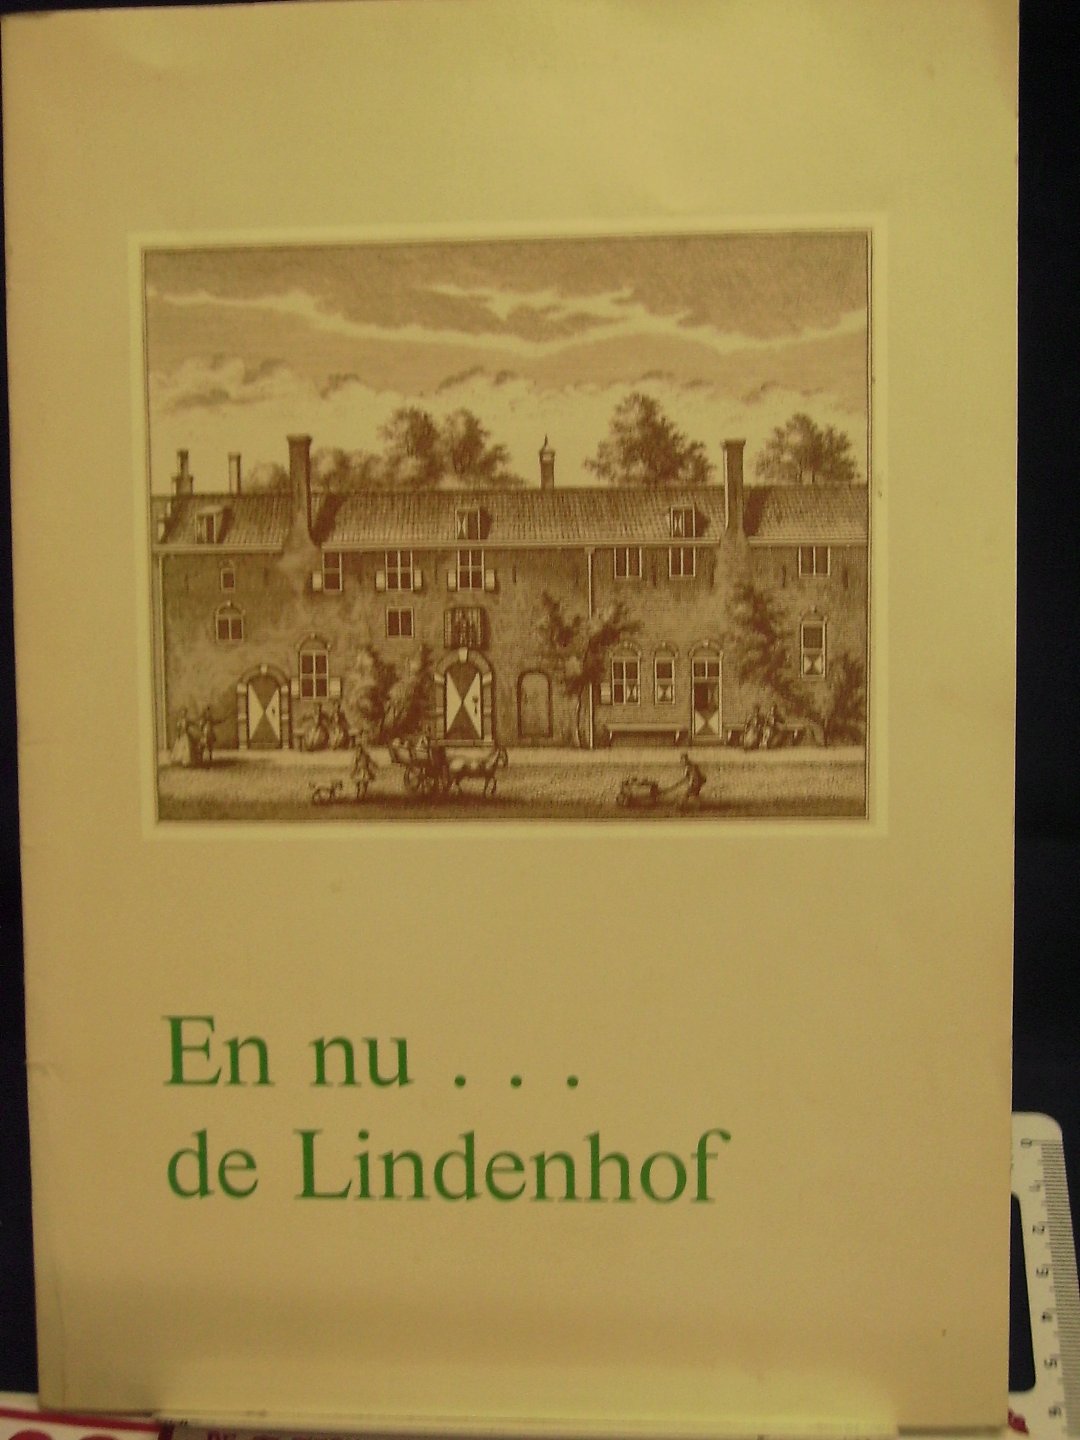 Krogt, Peter van der - En nu ... de Lindenhof ; Geschiedenis van de diaconale bejaardenzorg in Delft, uitgegeven ter gelegenheid van de opening van de Lindenhof op 28 juni 1989